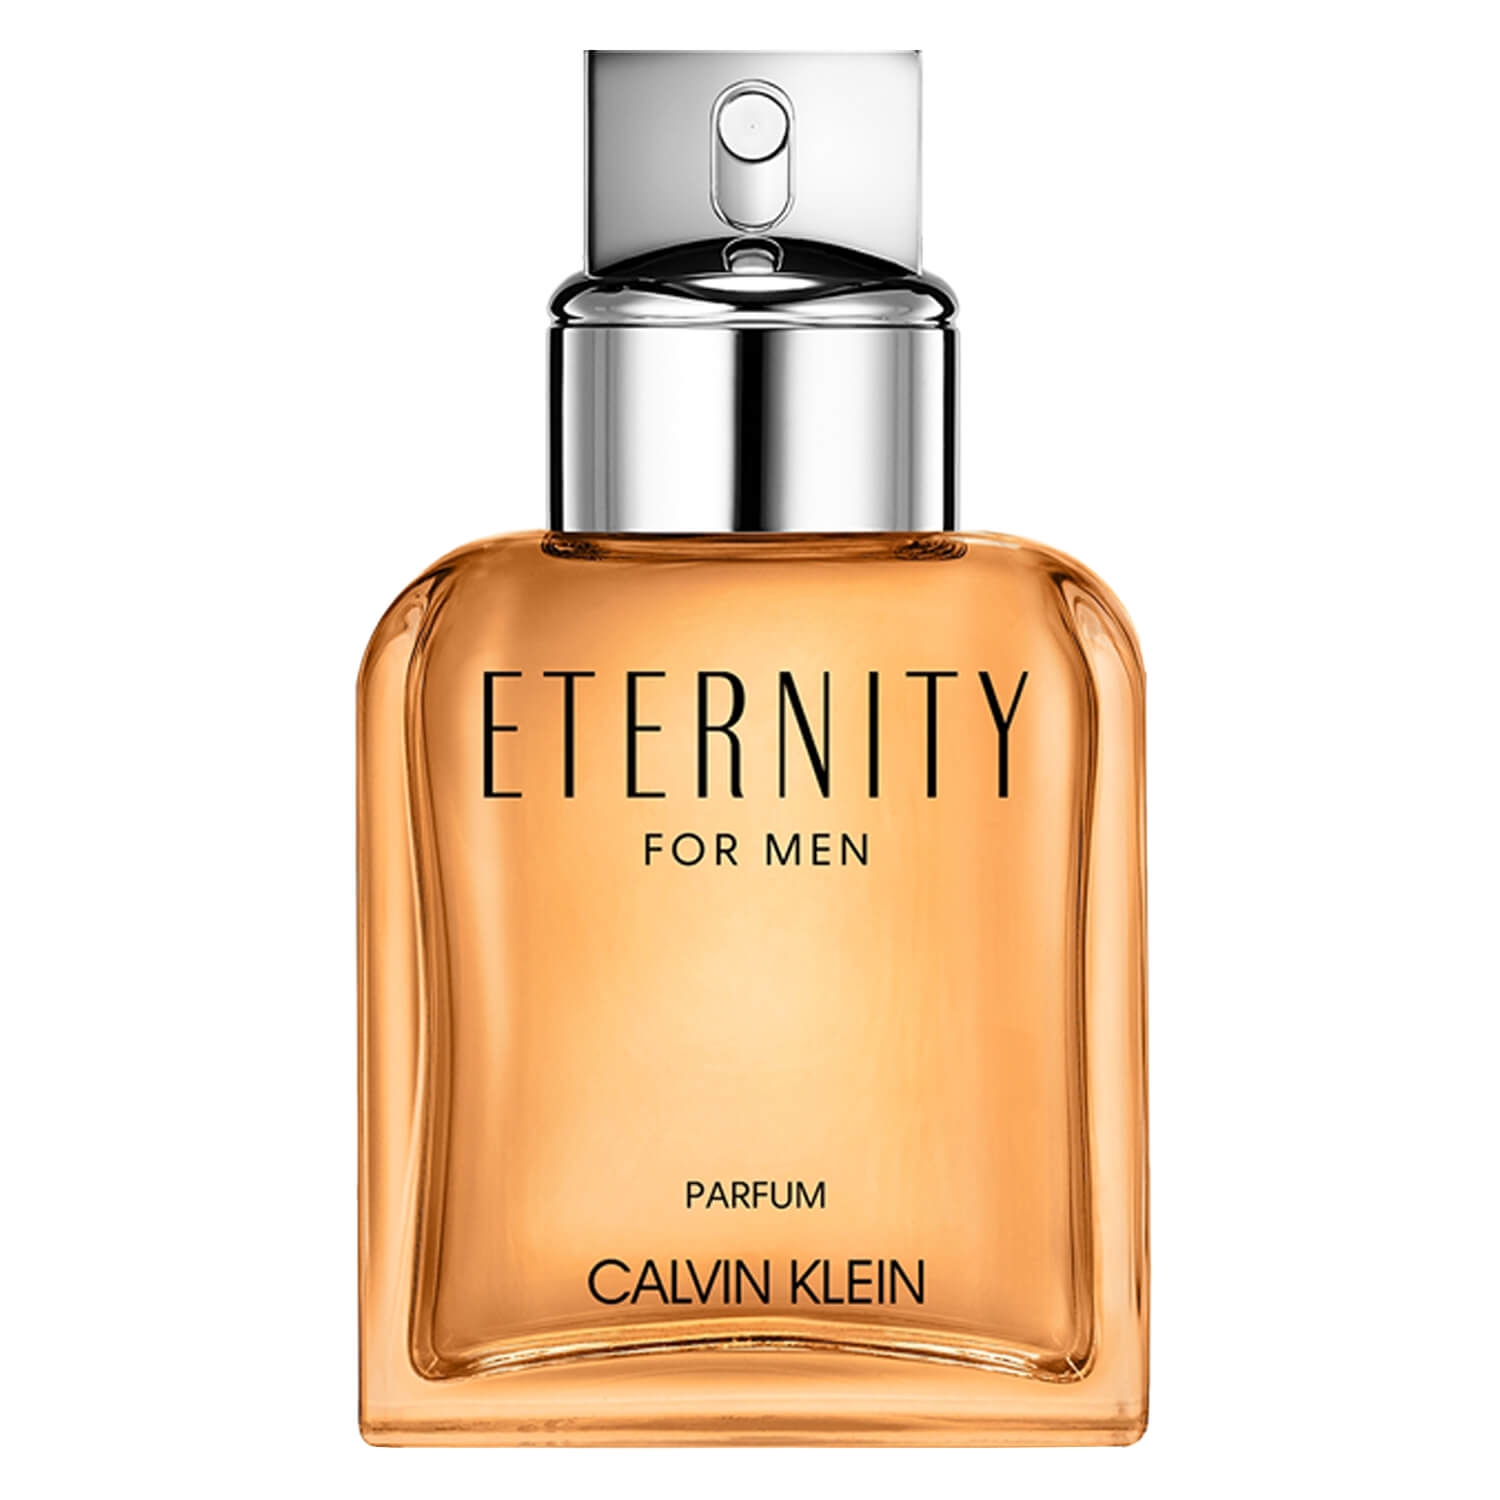 Produktbild von Eternity - For Men Eau de Parfum